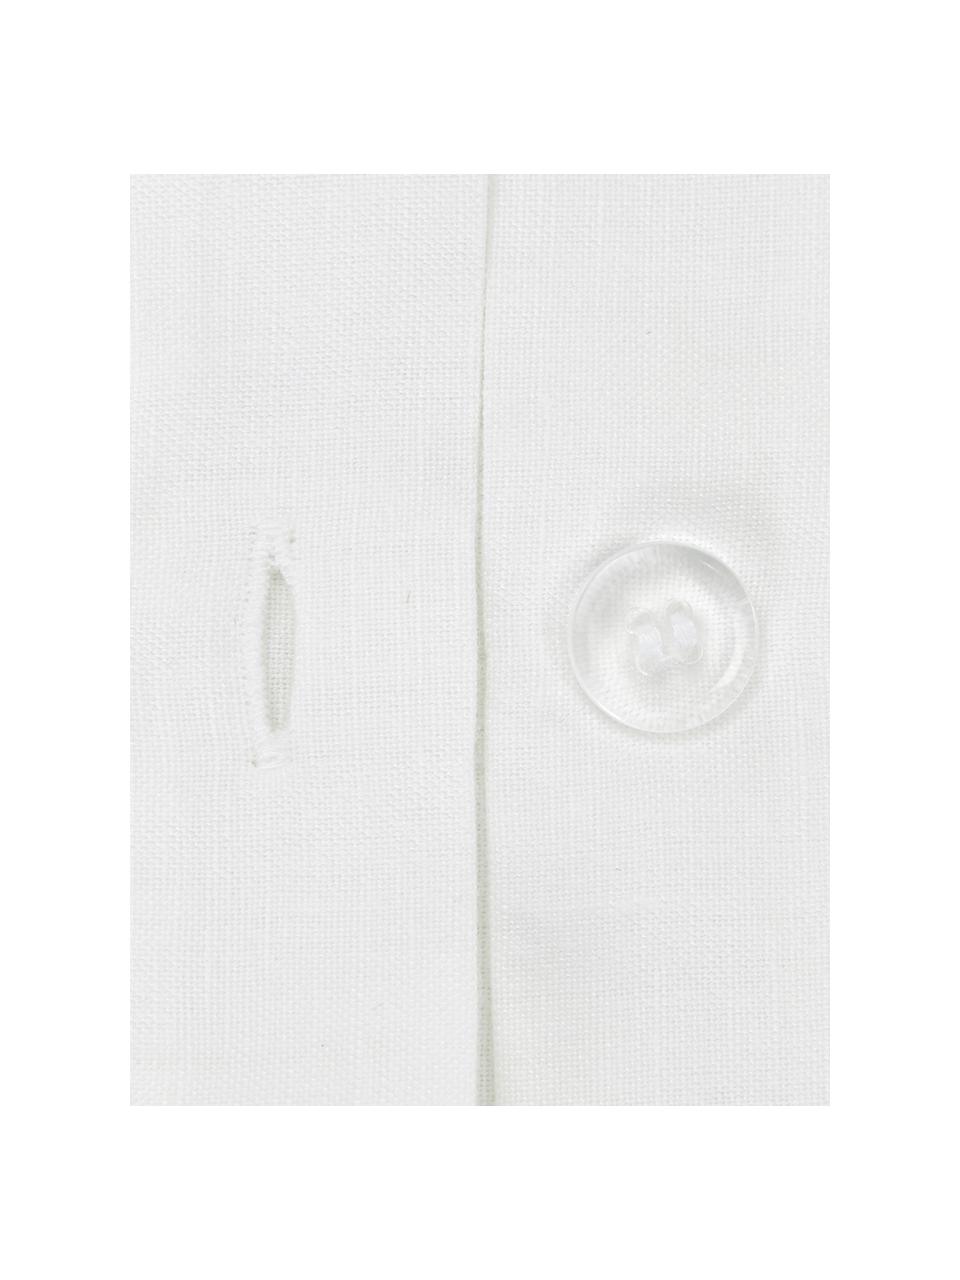 Poszewka na poduszkę z lnu z efektem sprania Eleanore, 2 szt., Biały, beżowy, S 40 x D 80 cm